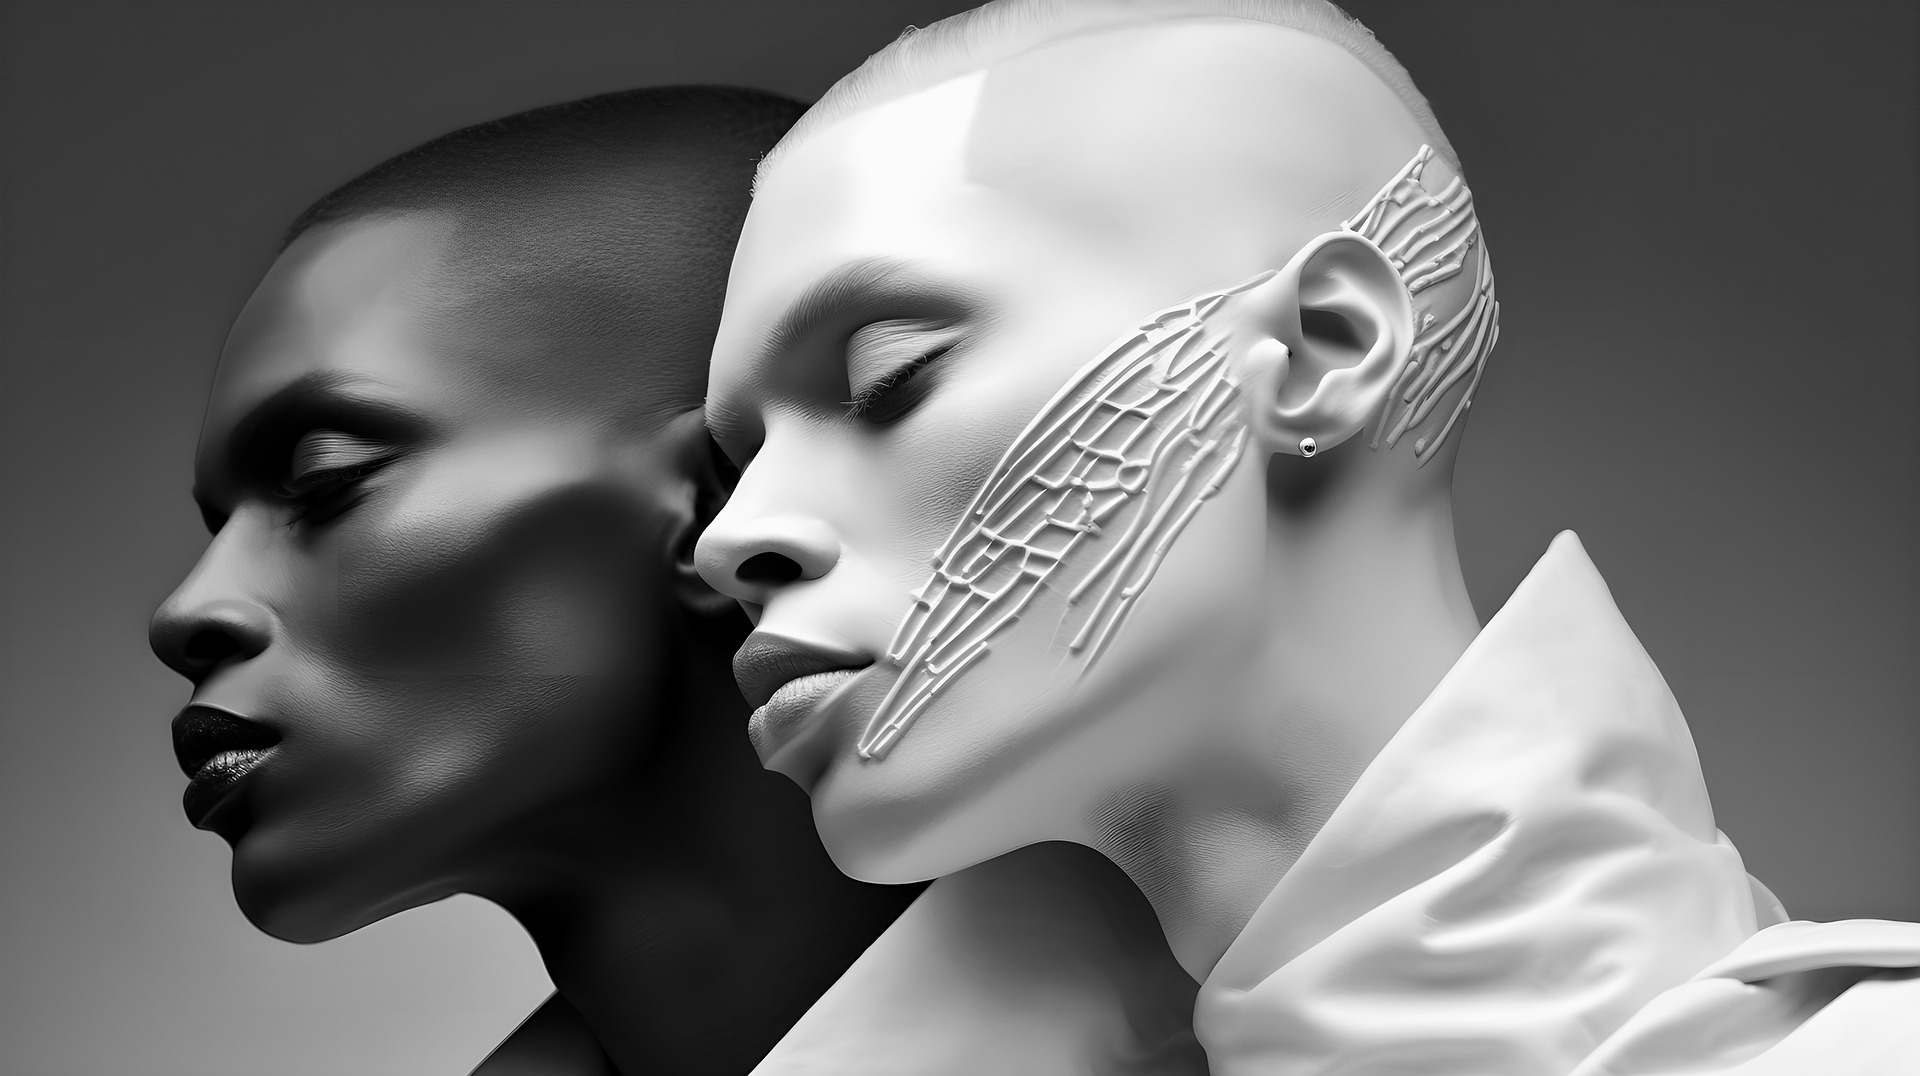 tête de deux personnes de profil, une à la peau noire et l'autre à la peau blanche avec des scarifications sur la joue